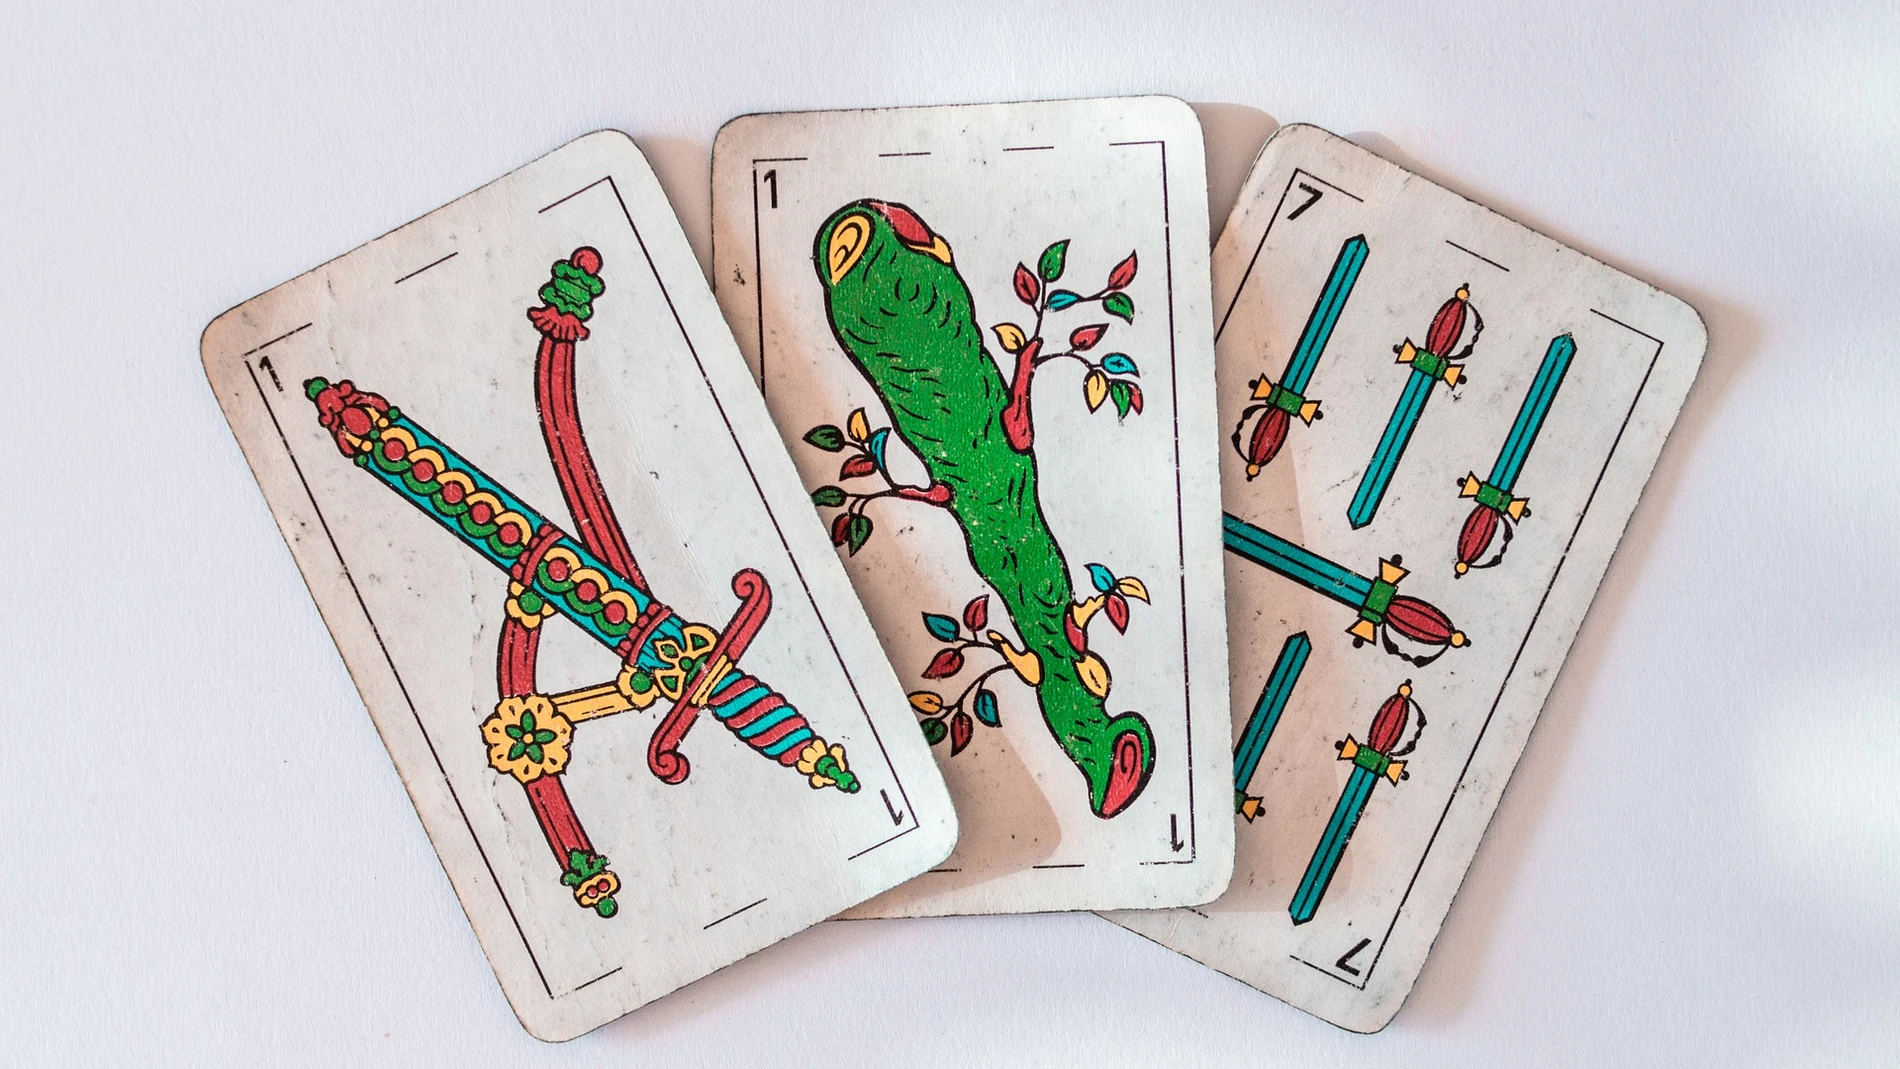 Cómo jugar al solitario con las cartas españolas